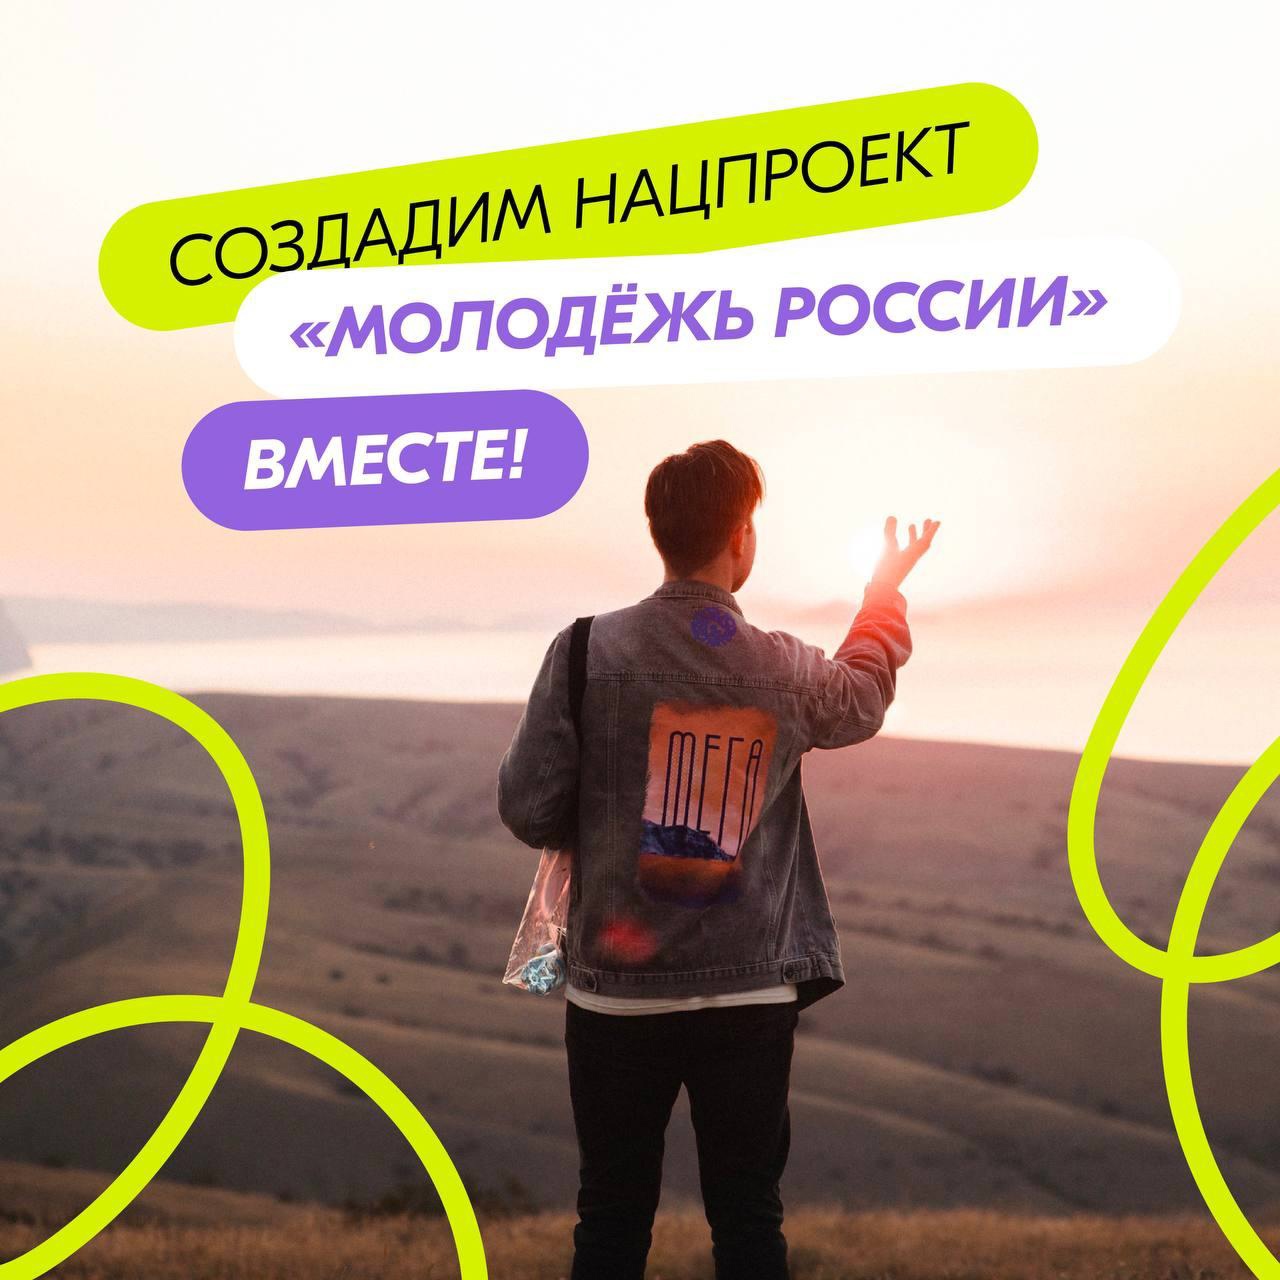 Создадим нацпроект «Молодёжь России» вместе!.